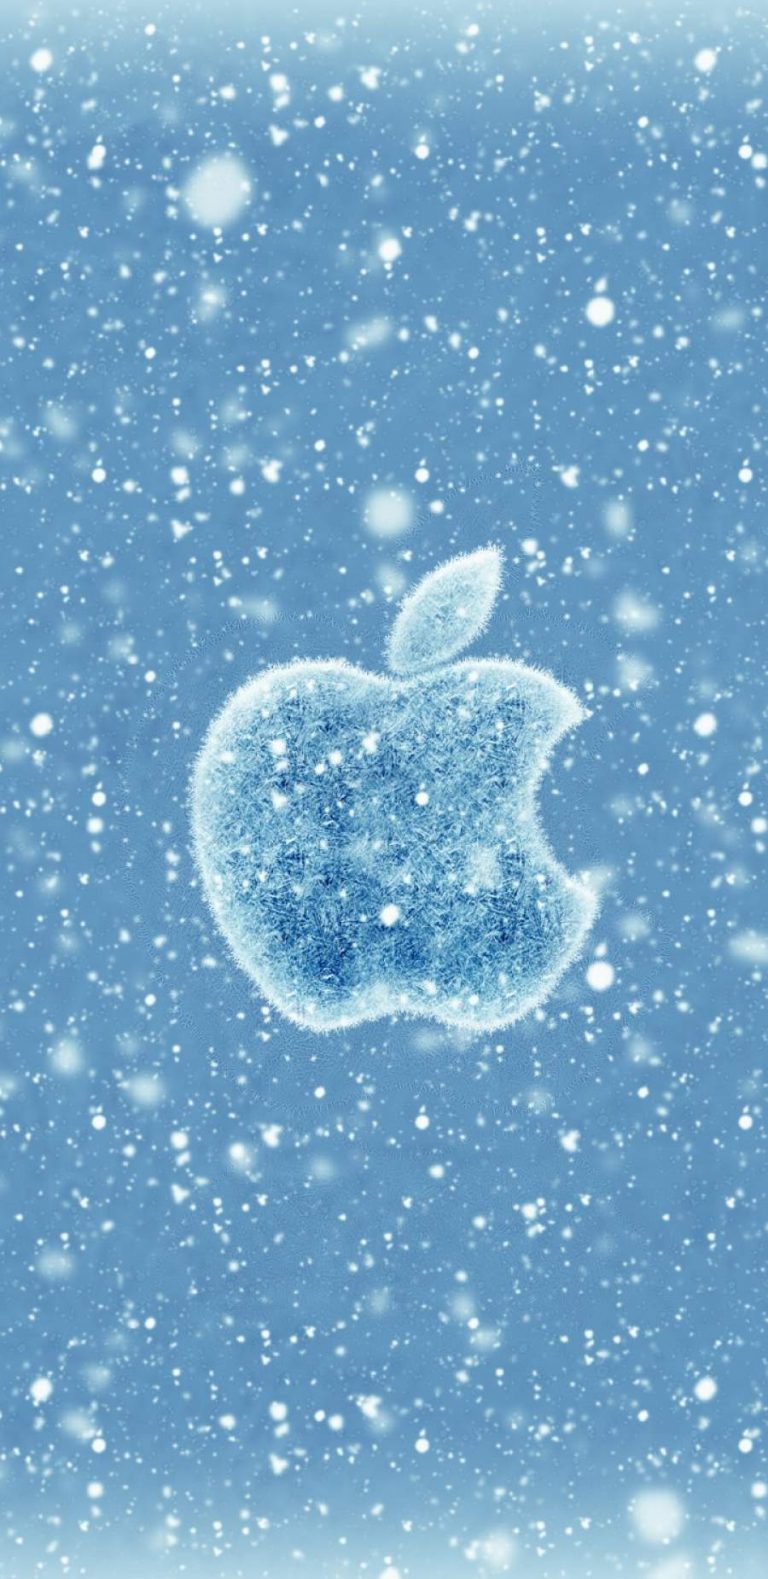 Apple Winter iPhone Wallpaper - iPhone Wallpapers